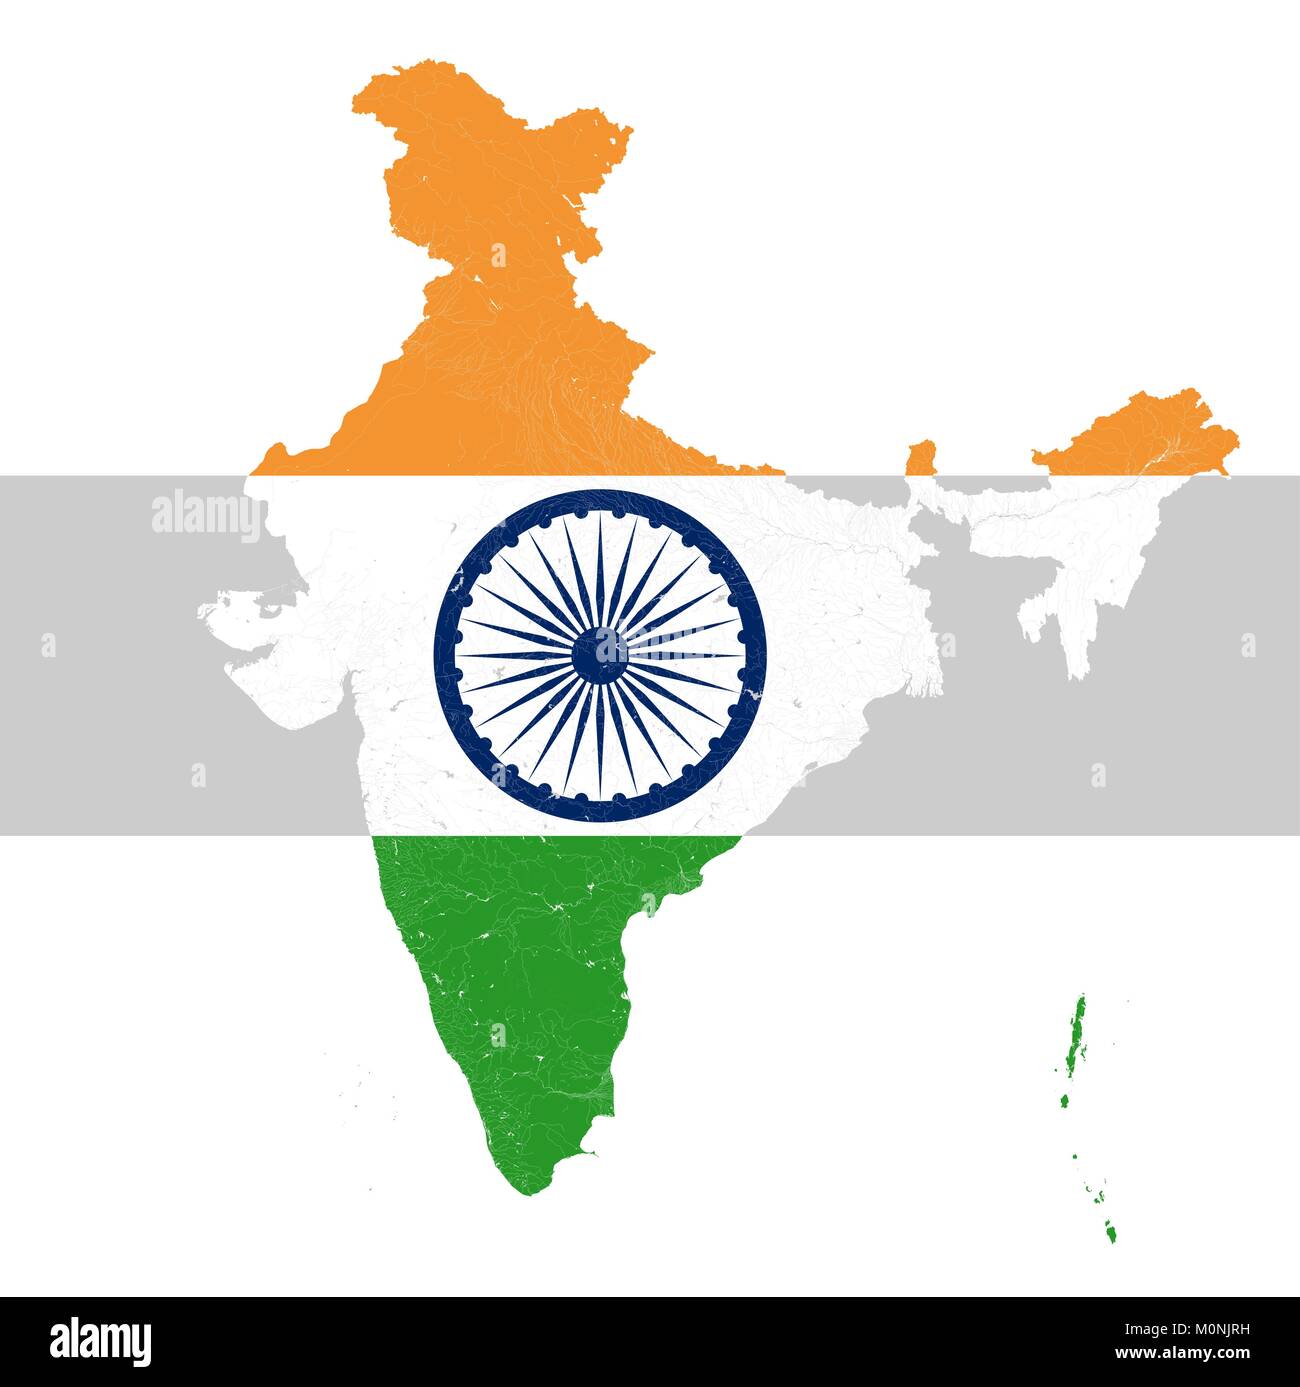 Karte von Indien mit Flüssen und Seen in den Farben der Nationalflagge Indiens... Karte besteht aus separaten Karten der Bundesstaaten und Unionsterritorien tha Stock Vektor